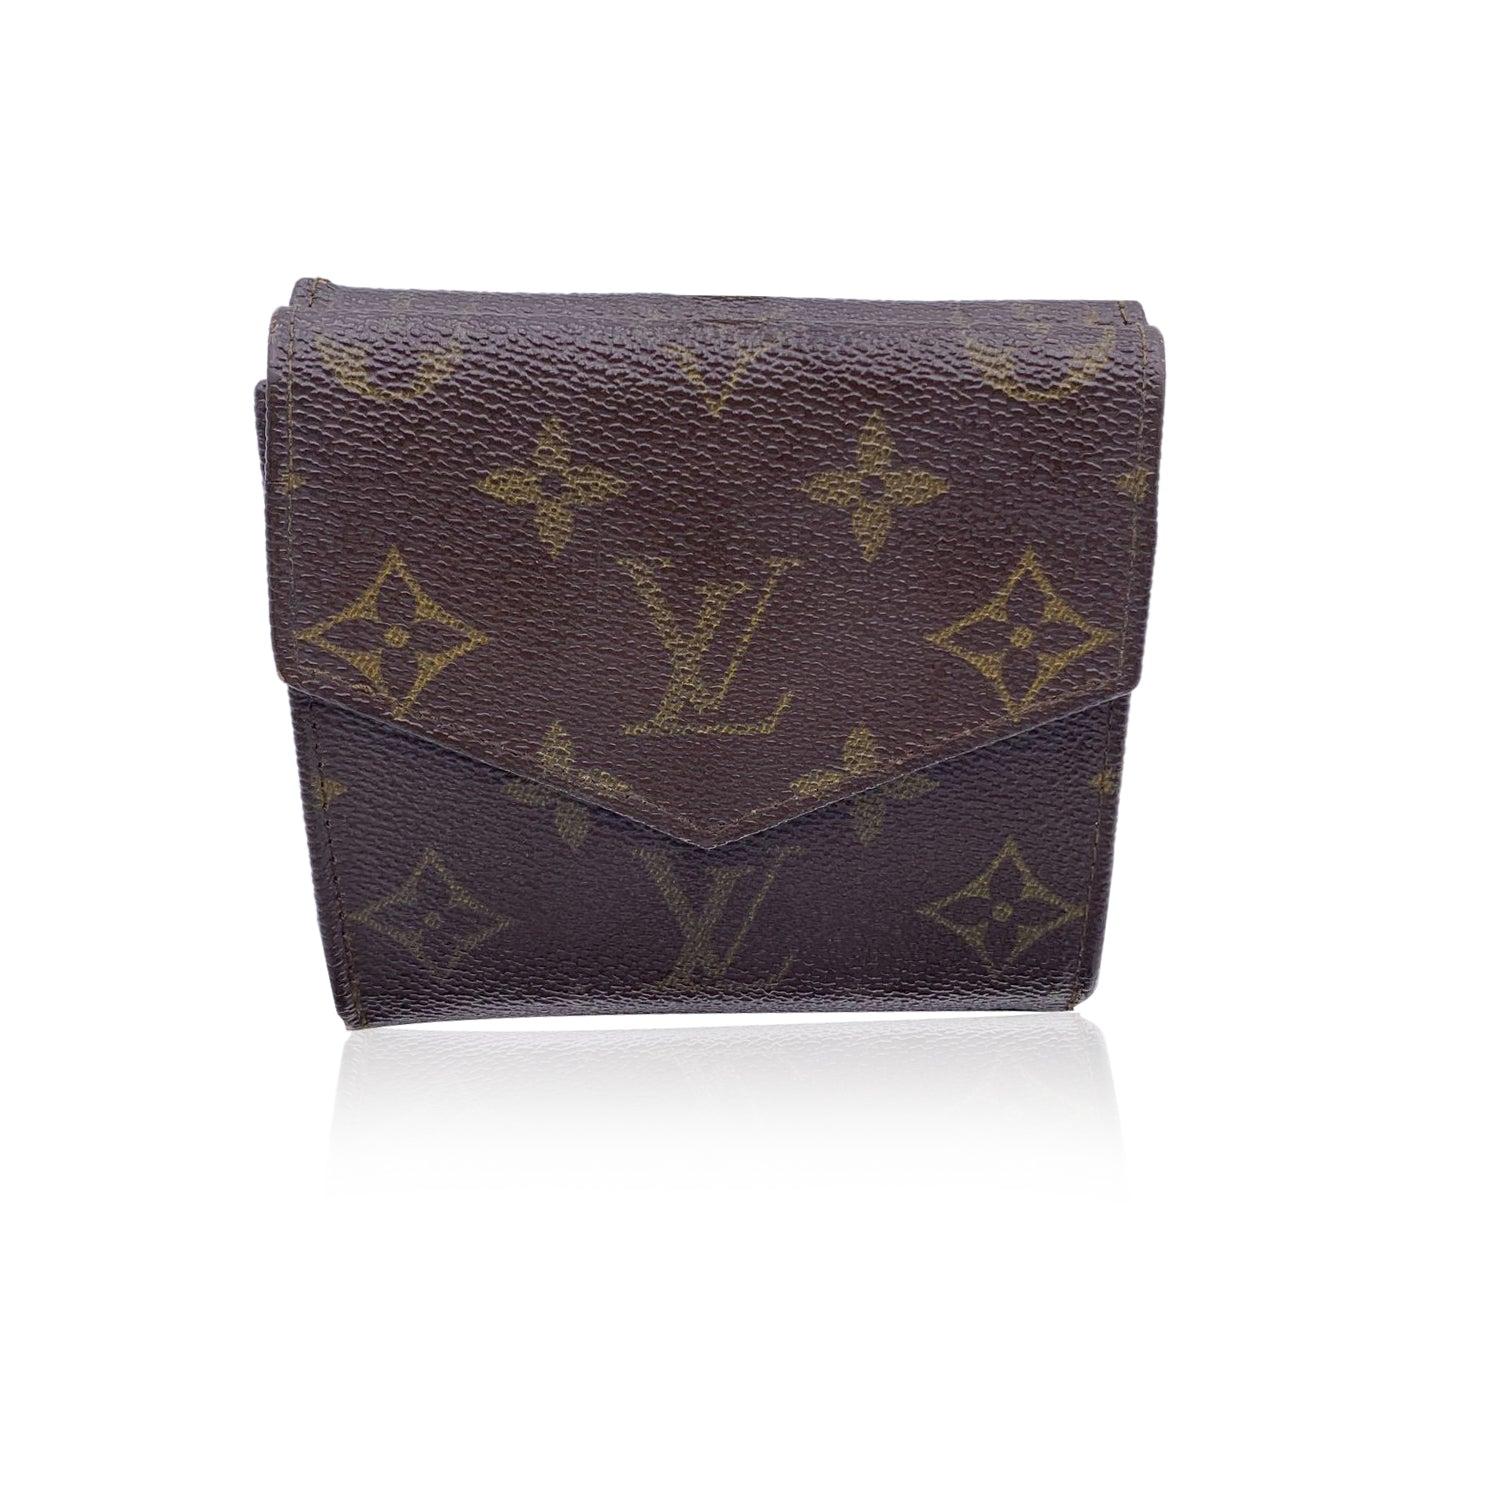 Louis Vuitton Vintage Portemonnaie in quadratischer Form mit doppelter Seitenklappe. Aus braunem Segeltuch mit Monogrammen gefertigt. Innenfutter aus Leder. 1 Münzfach mit Klappe auf einer Seite und ein dreifach gefaltetes Fach auf der anderen